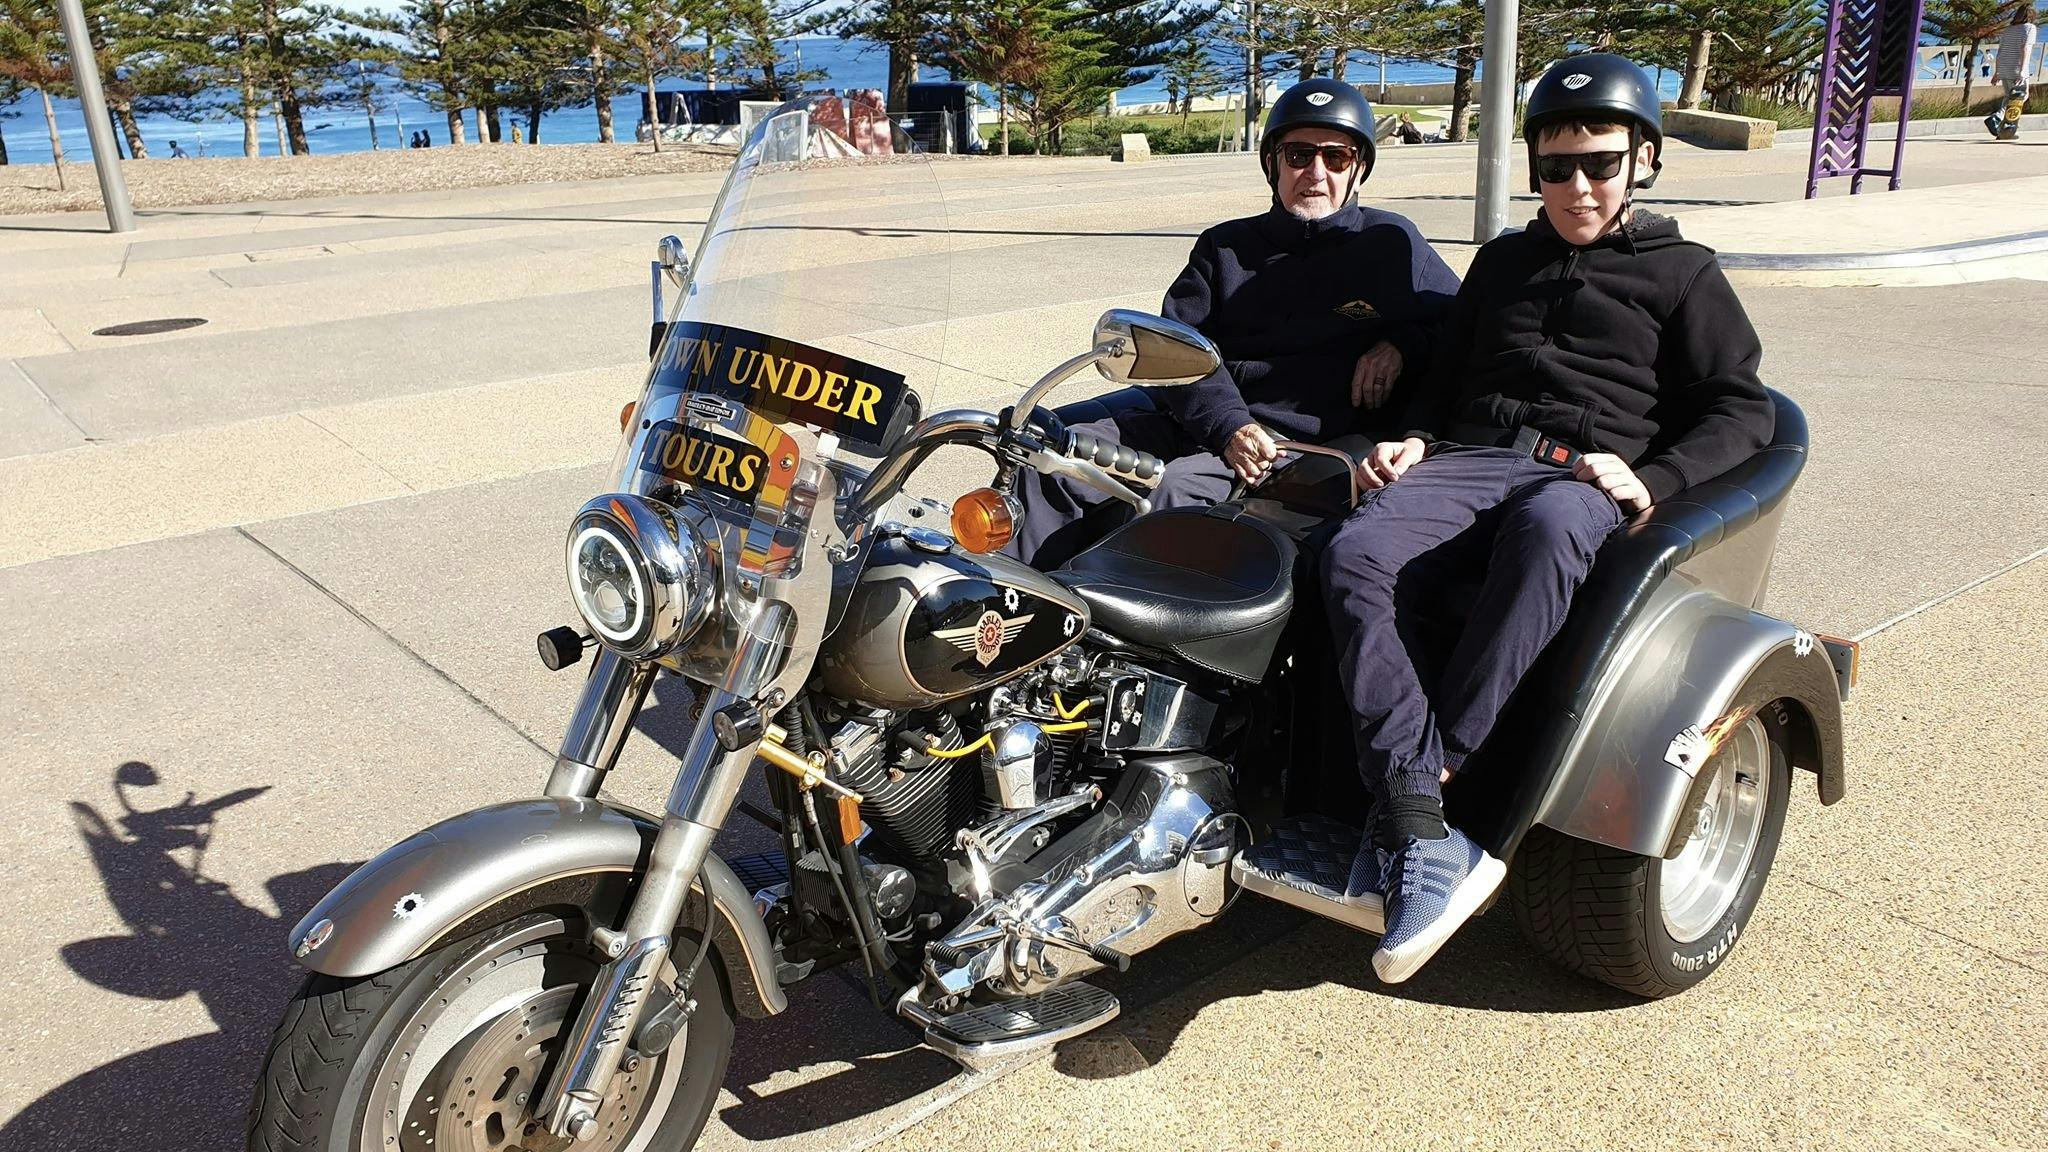 Down Under Motorcycle Tours Tour Tourism Western Australia